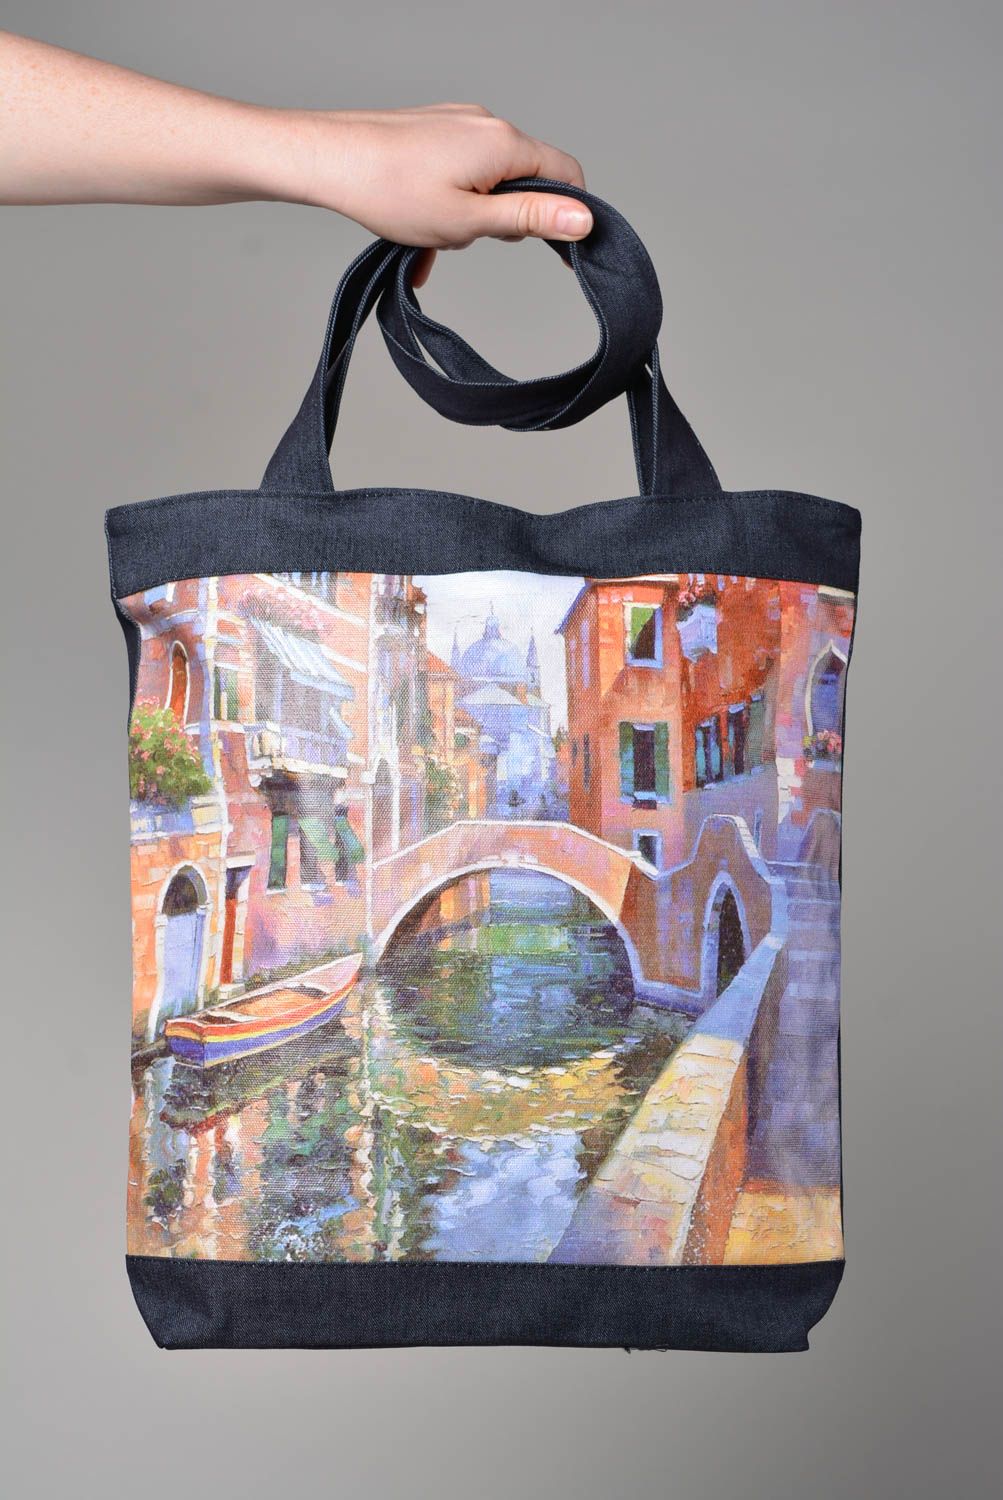 Сумка ручной работы оригинальная женская сумка яркая тканевая сумка Венеция фото 4